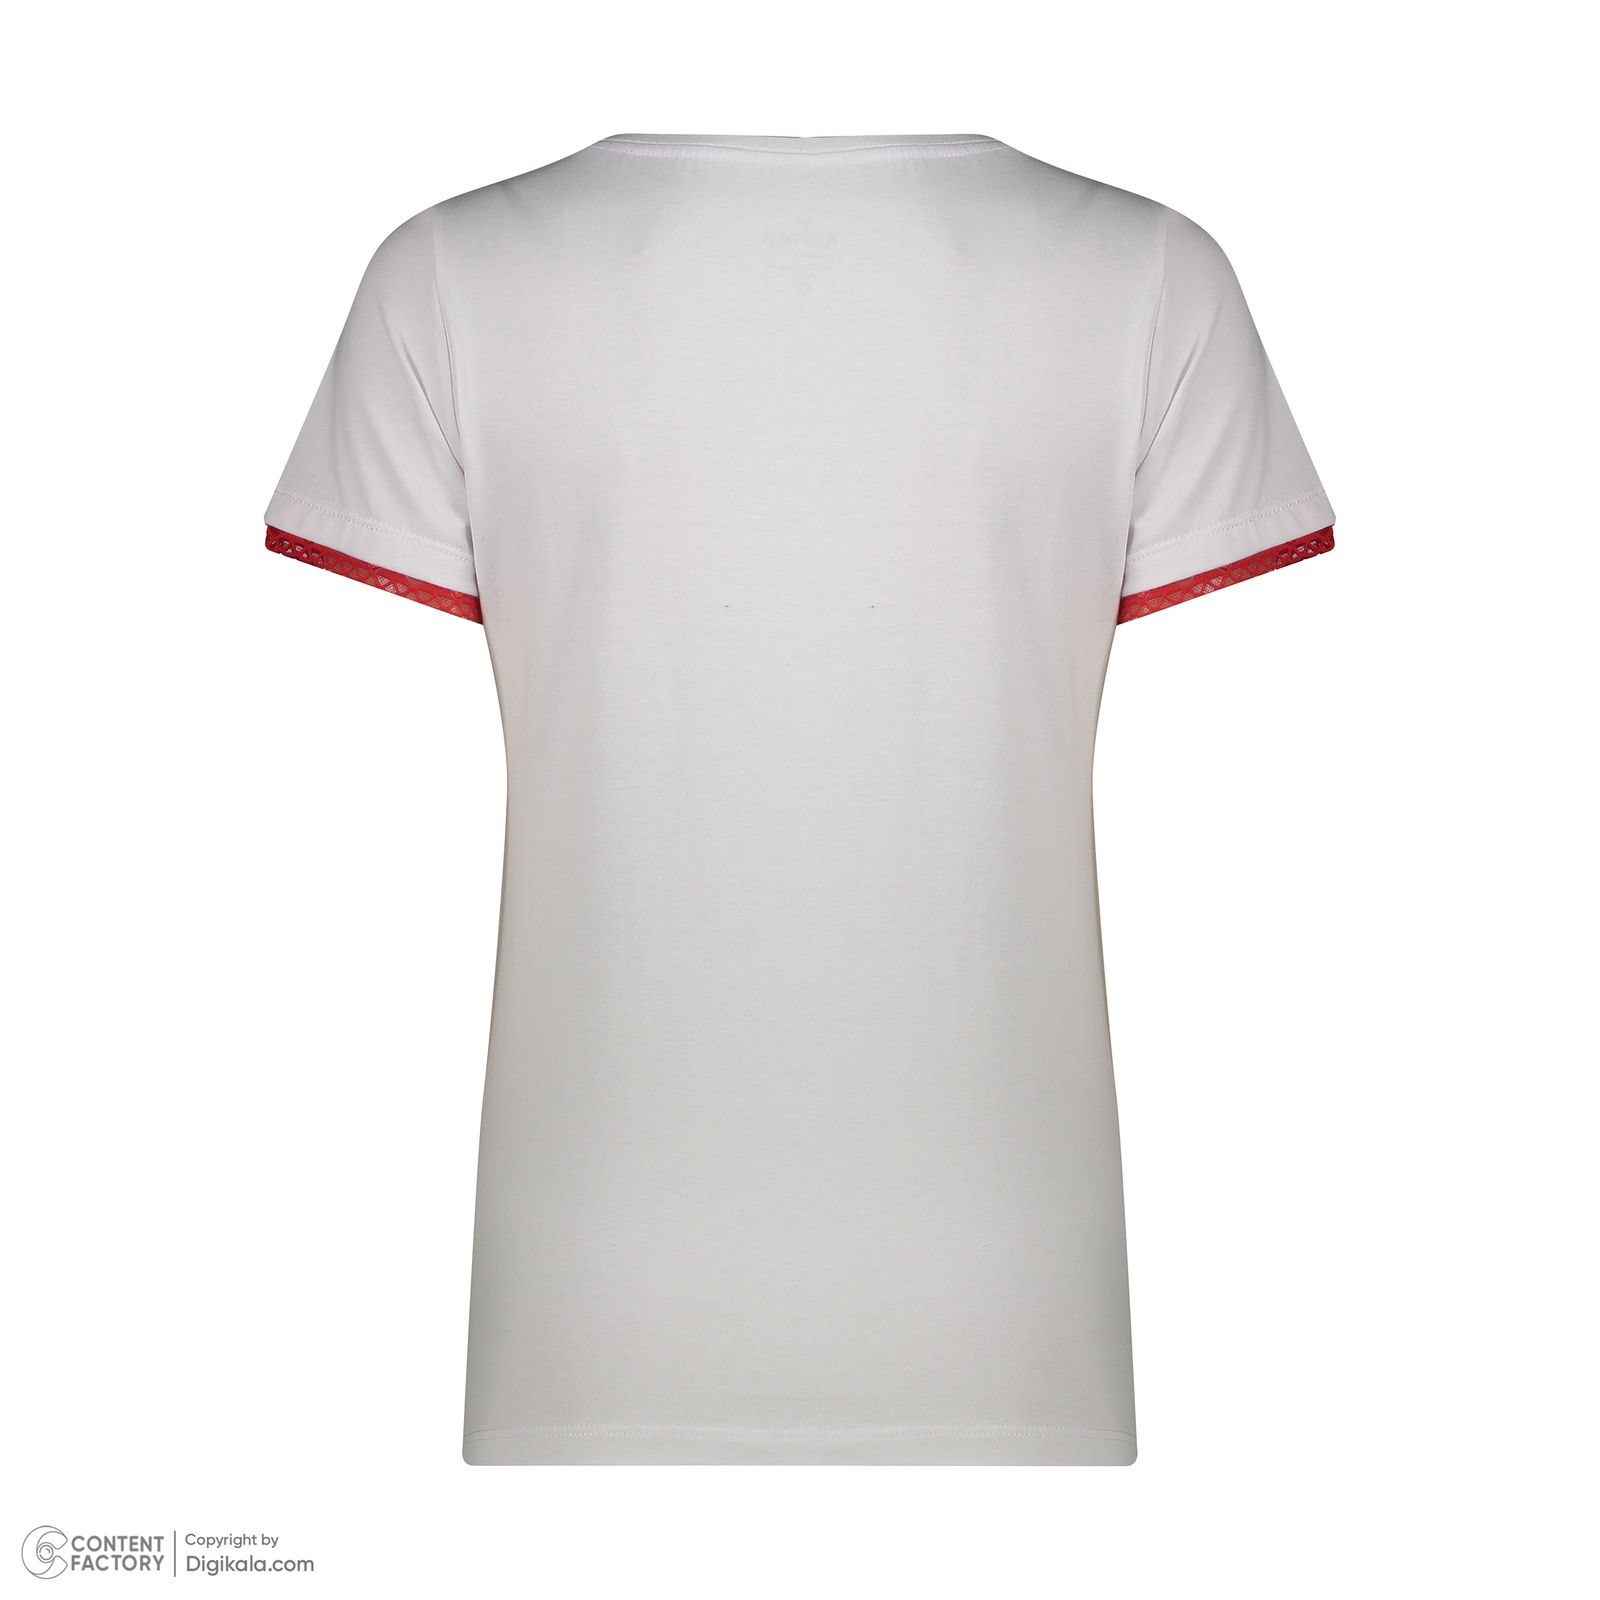 ست تی شرت آستین کوتاه و شلوار زنانه ناربن مدل 1521928 رنگ سفید -  - 5